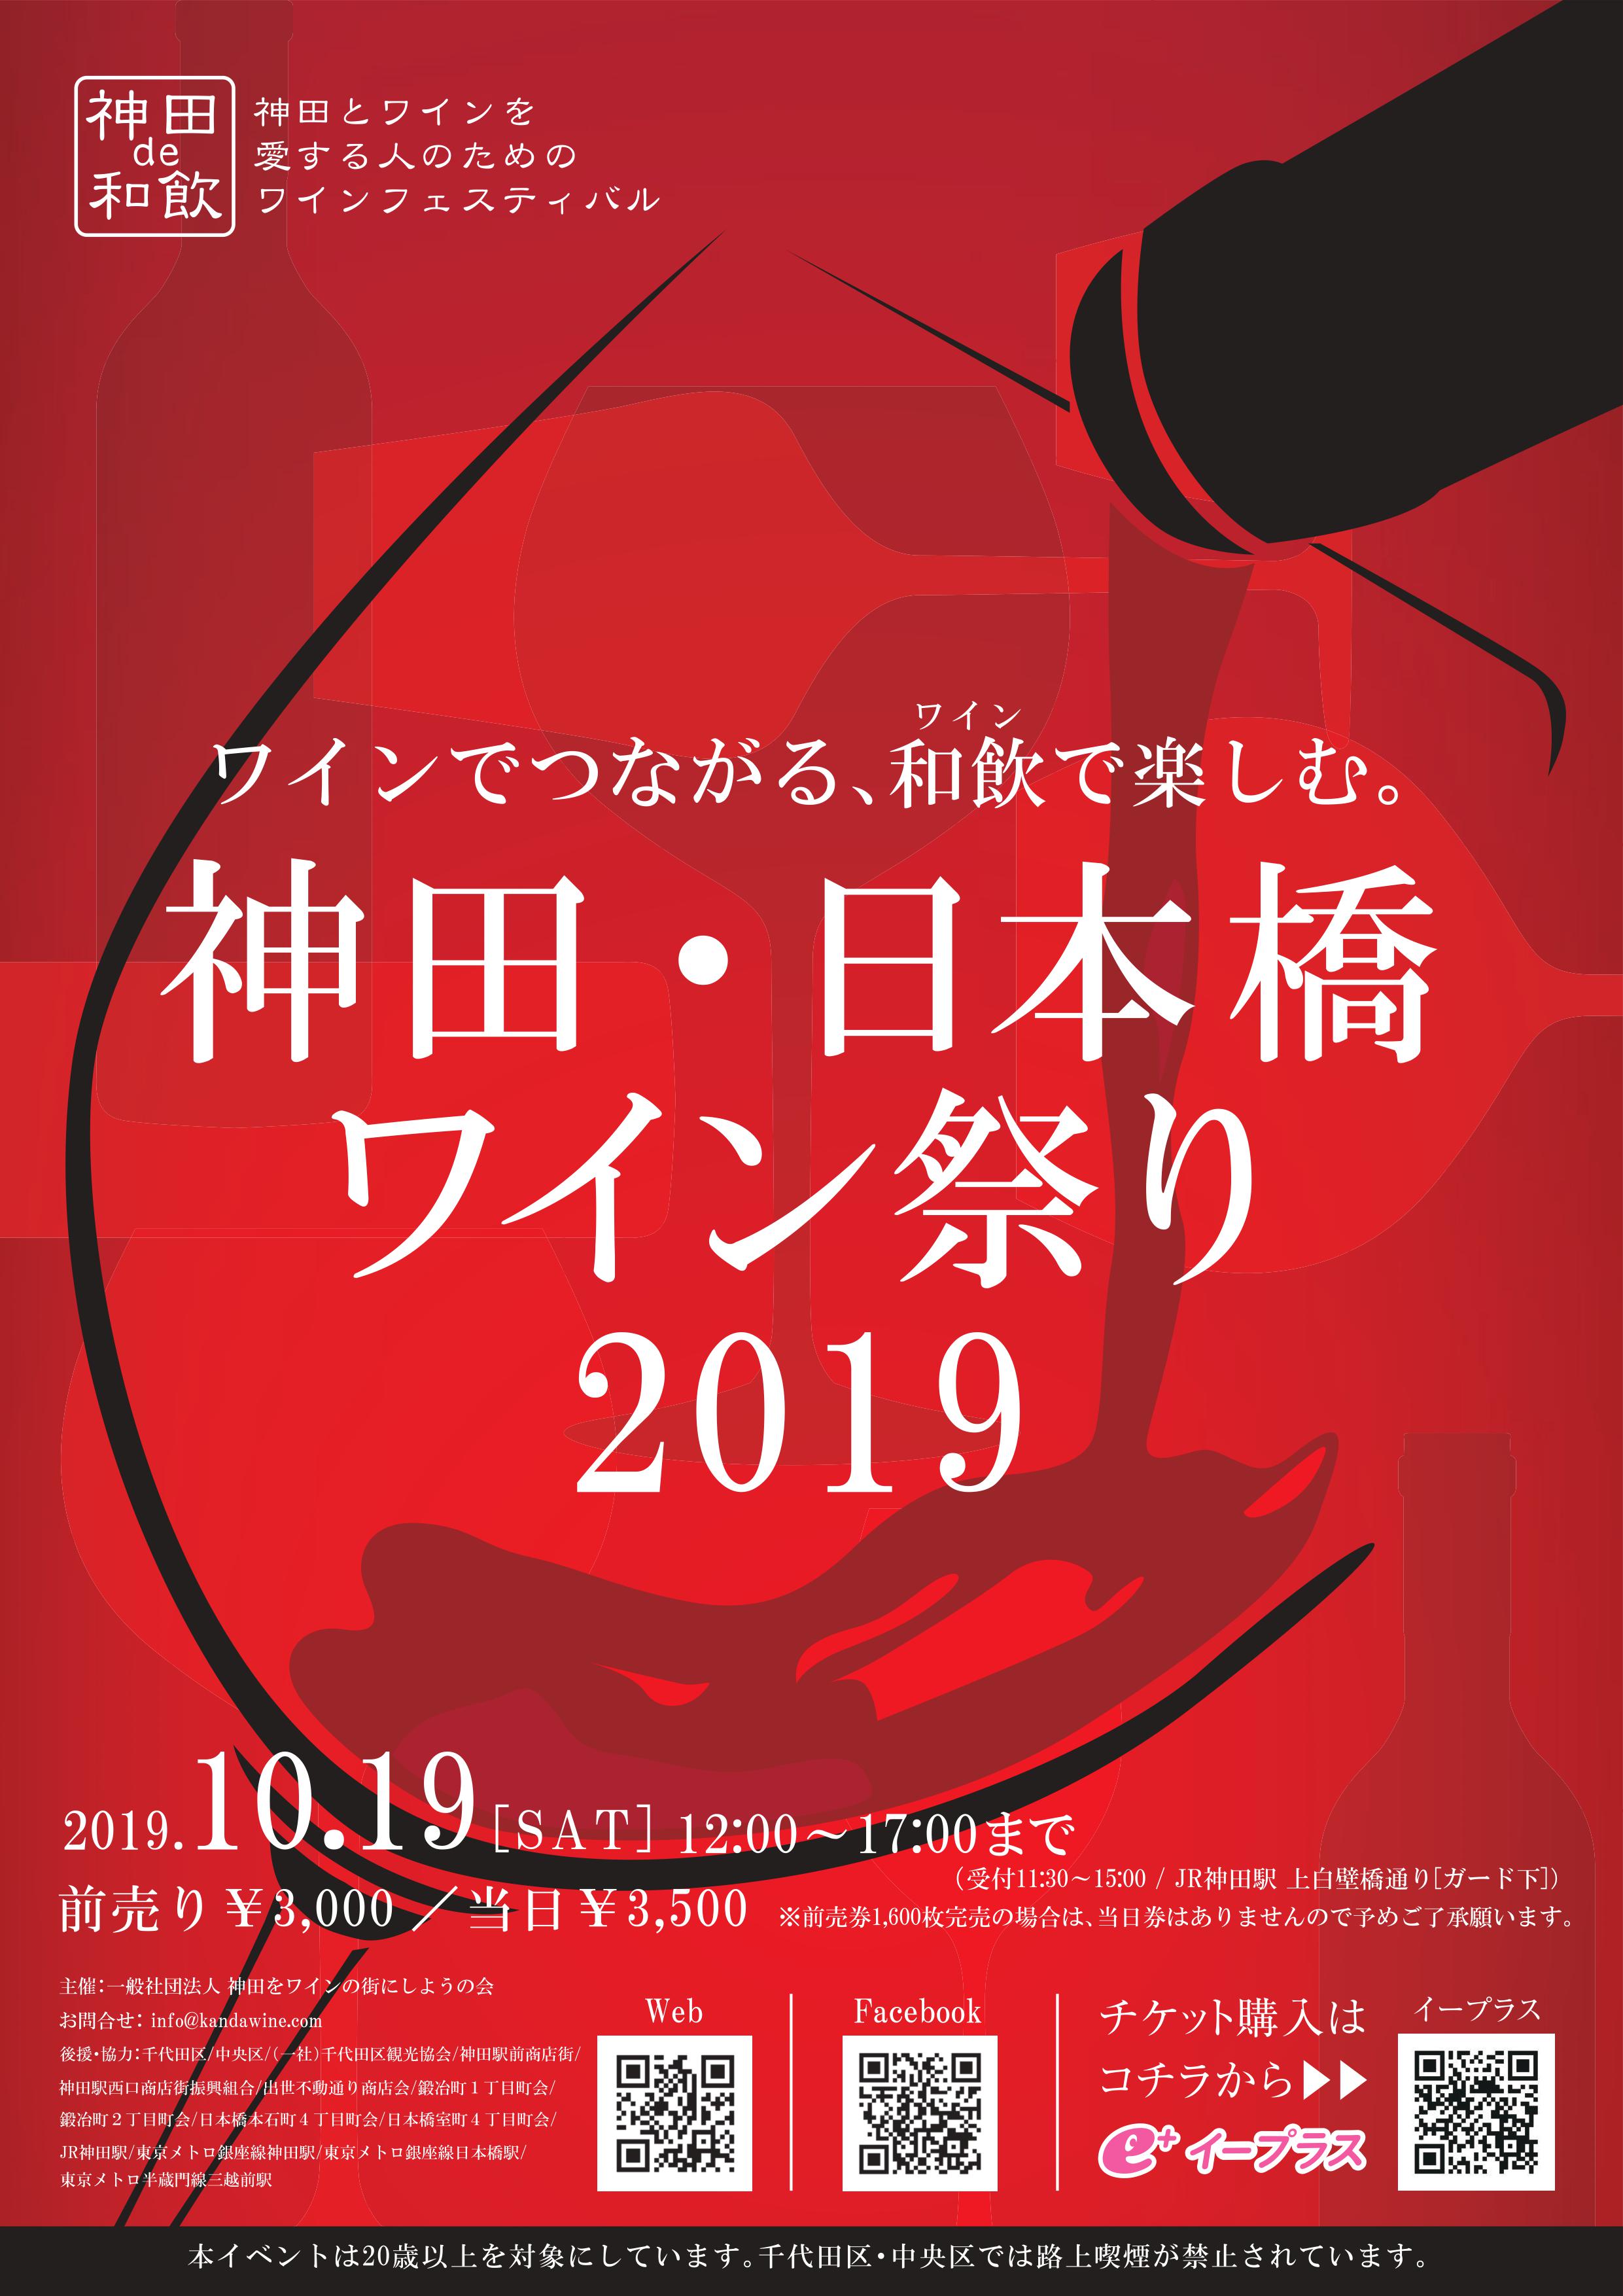  神田・日本橋ワイン祭り2019 